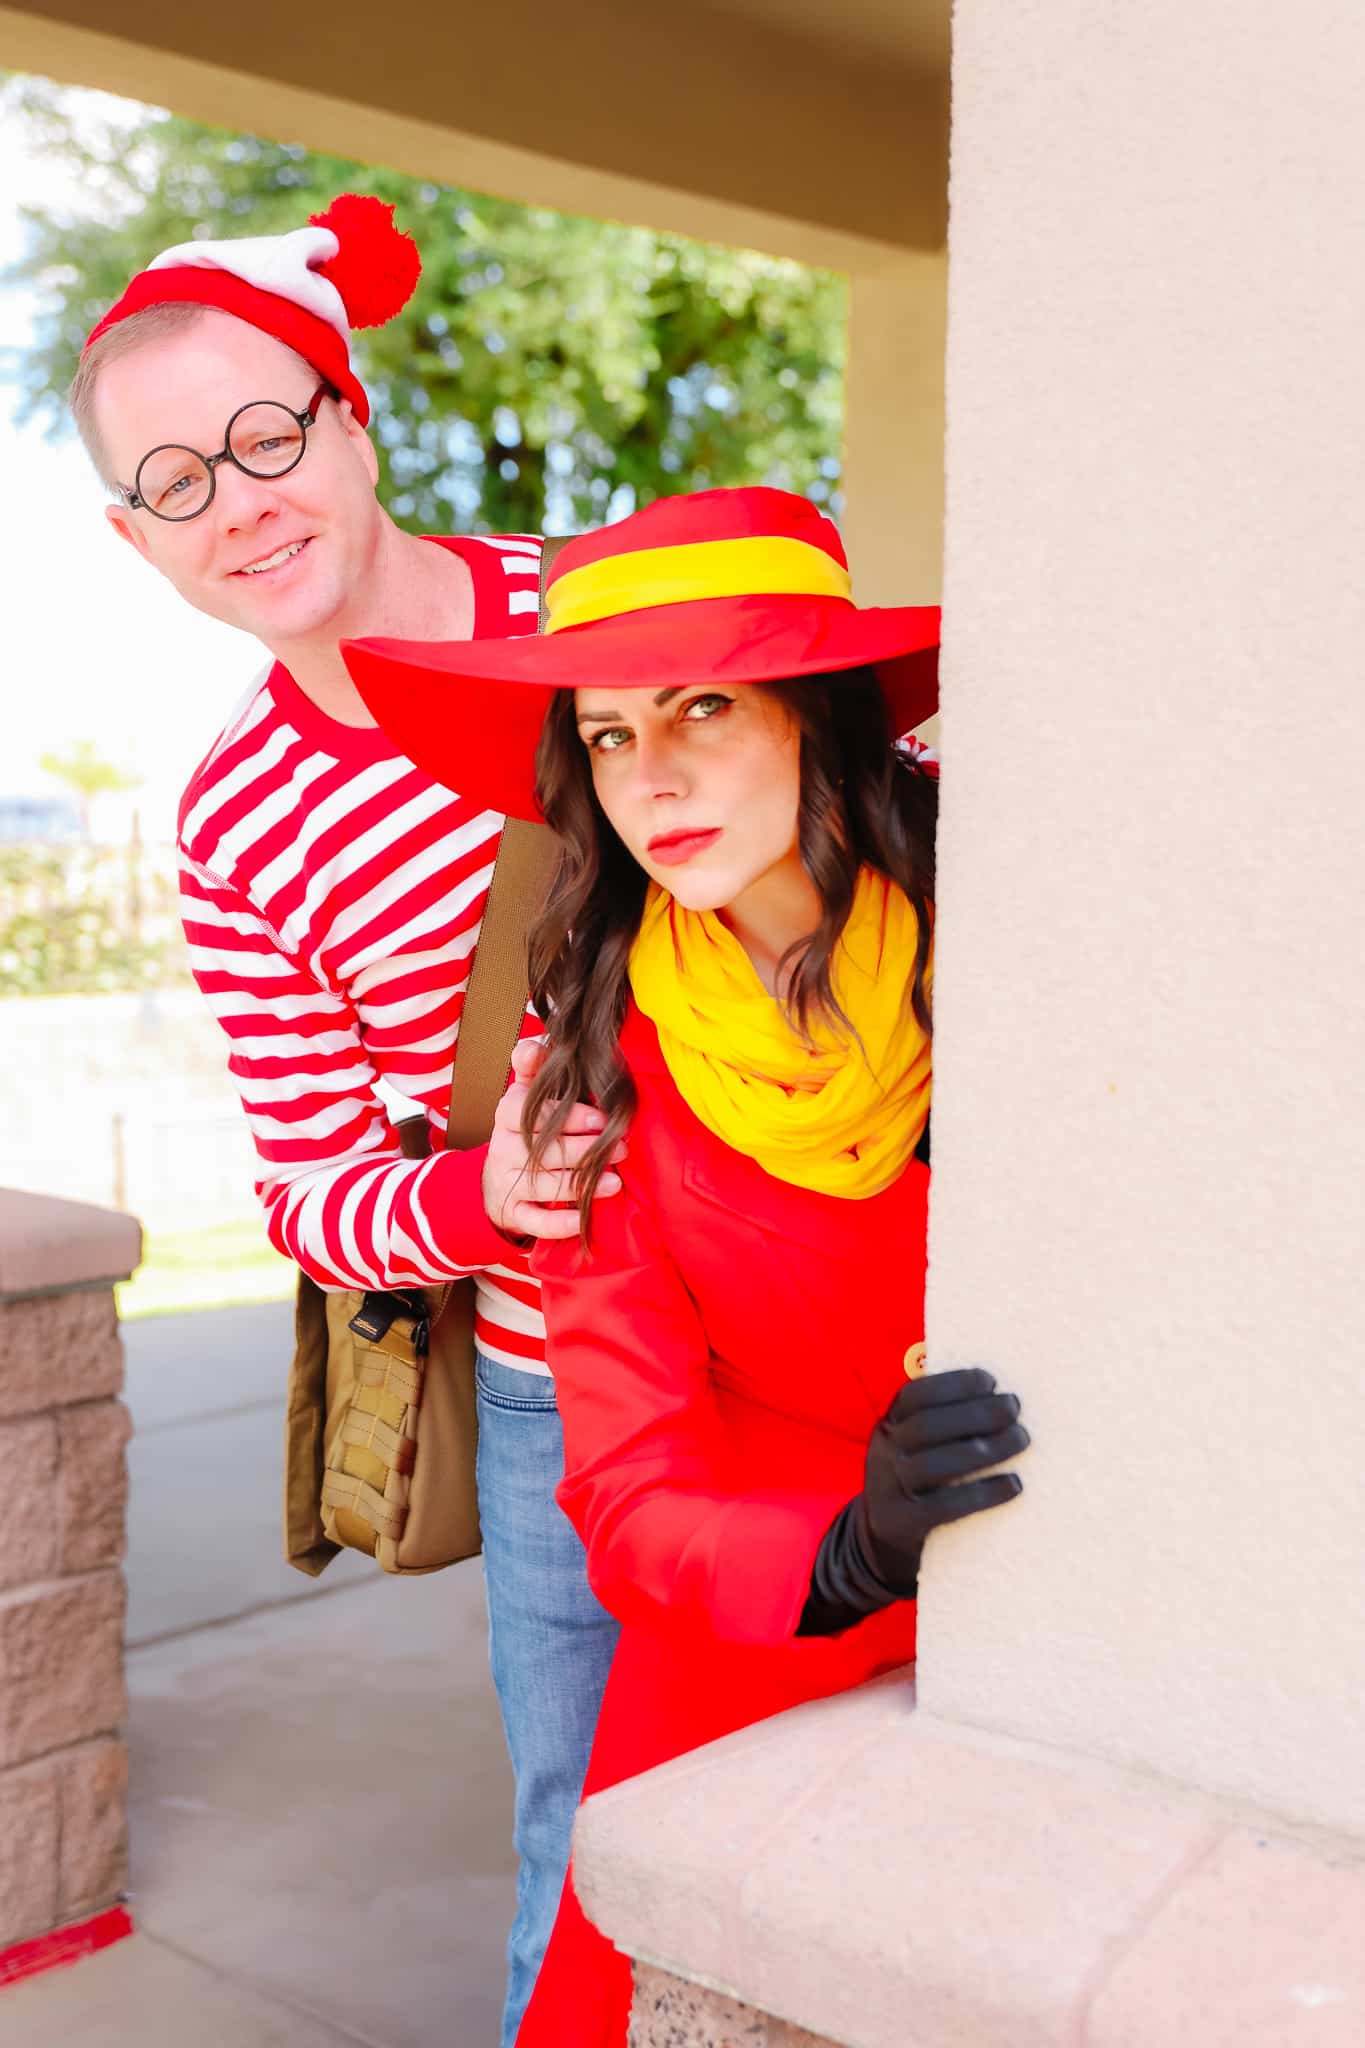 Carmen Sandiego and Waldo